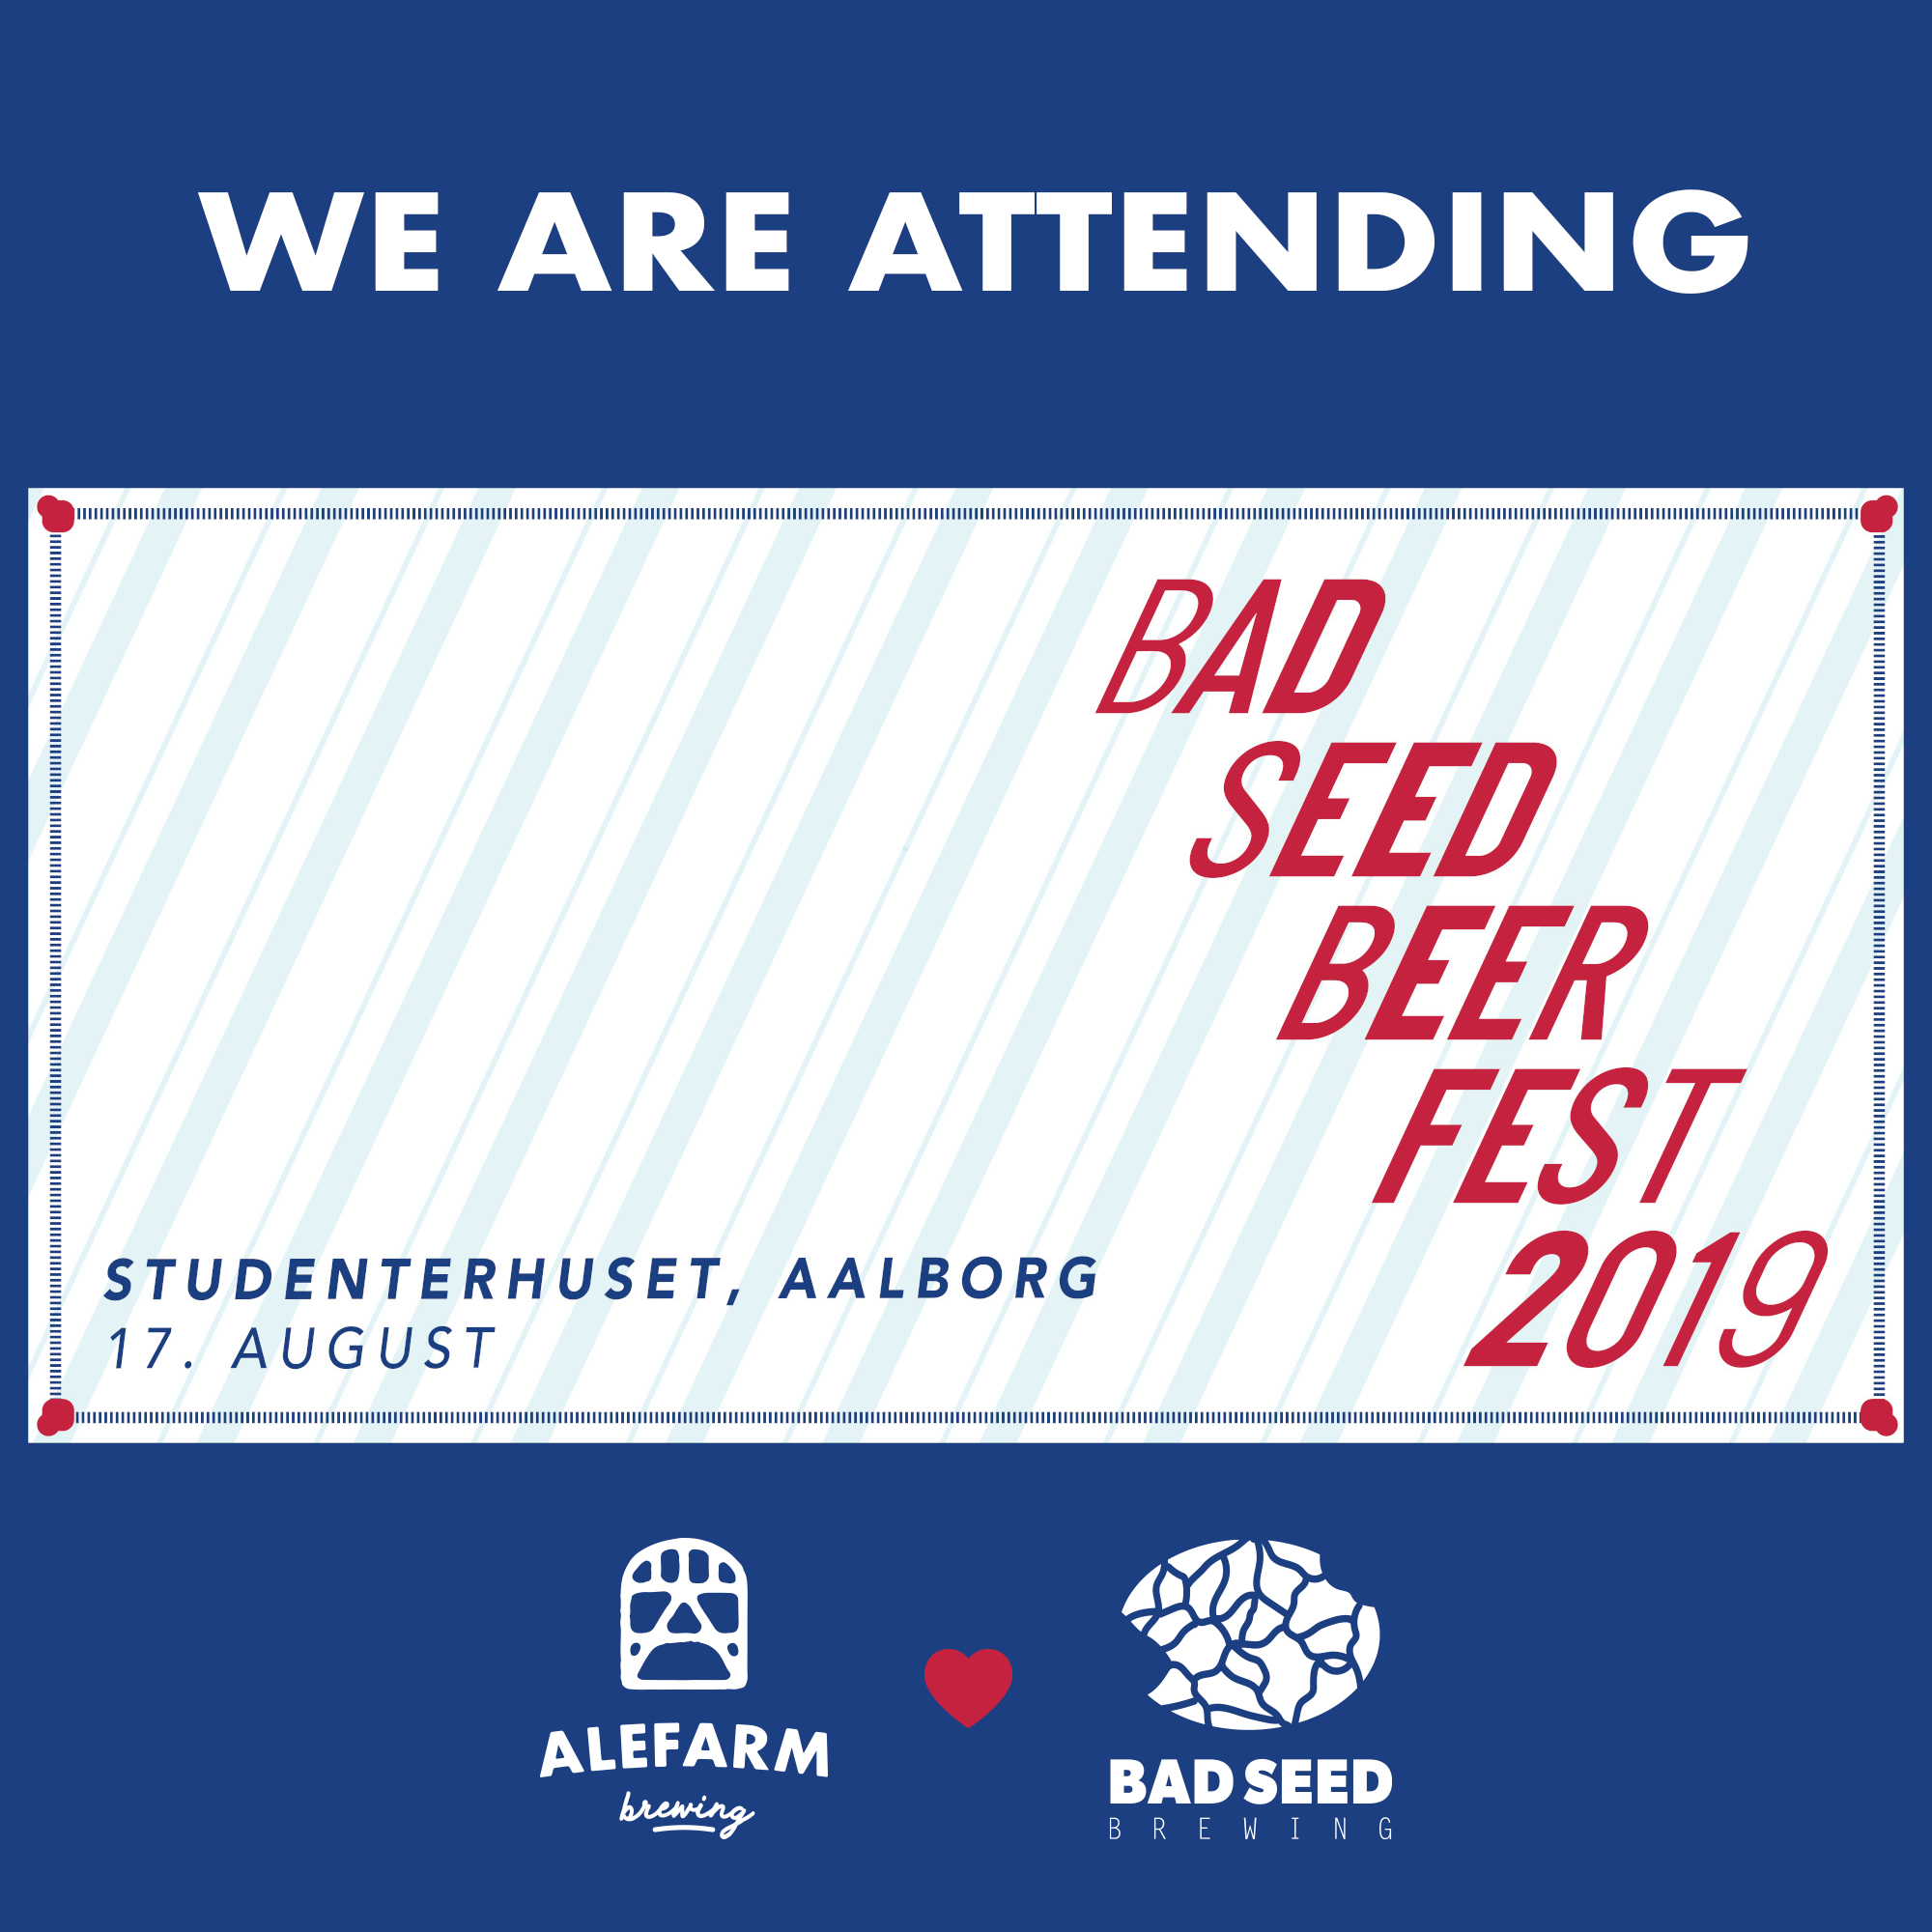 We're attending Bad Seed Beer Fest 2019!